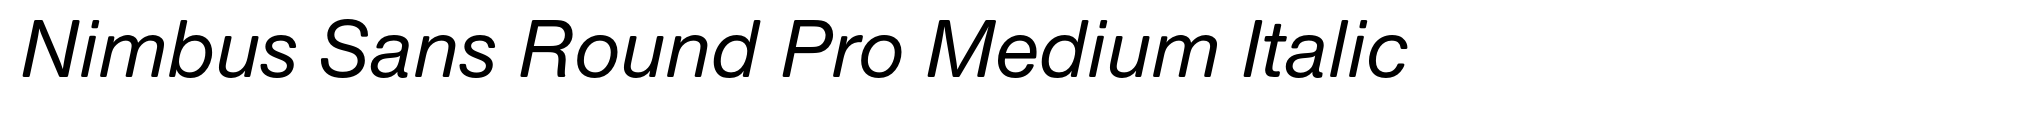 Nimbus Sans Round Pro Medium Italic image